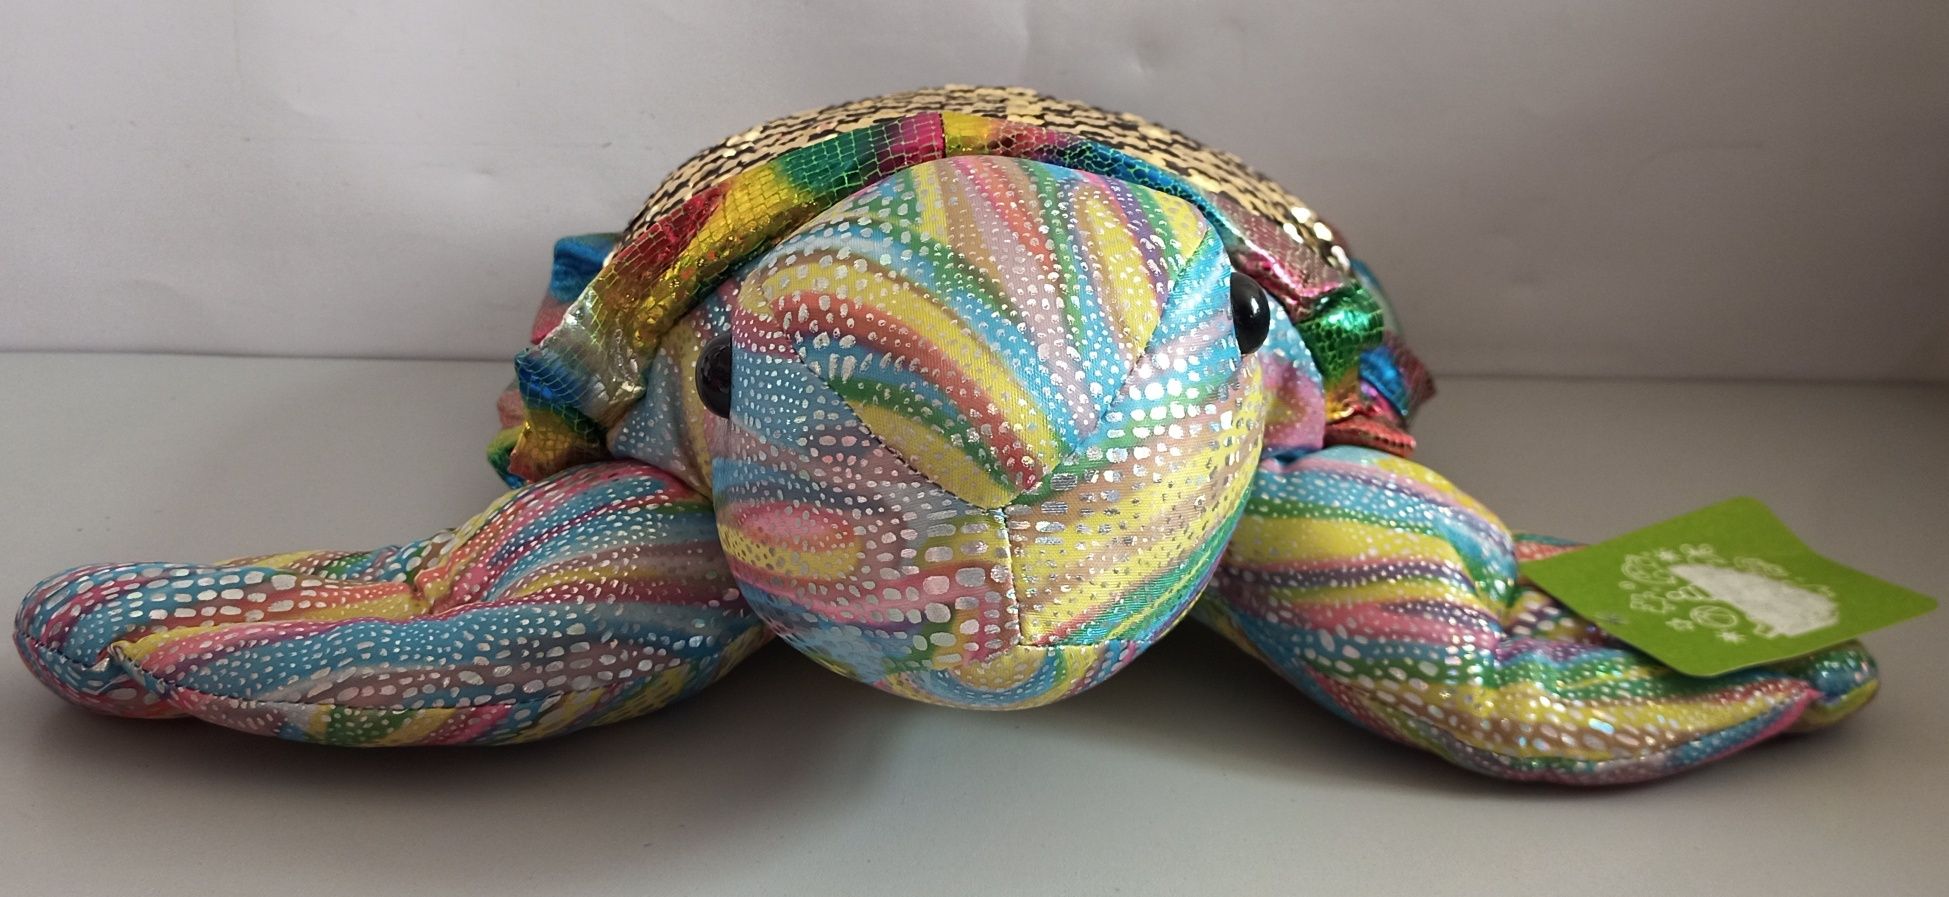 Мягкая игрушка с паетками Морская черепаха, 48,5 см.
Стич из м/ф Лило